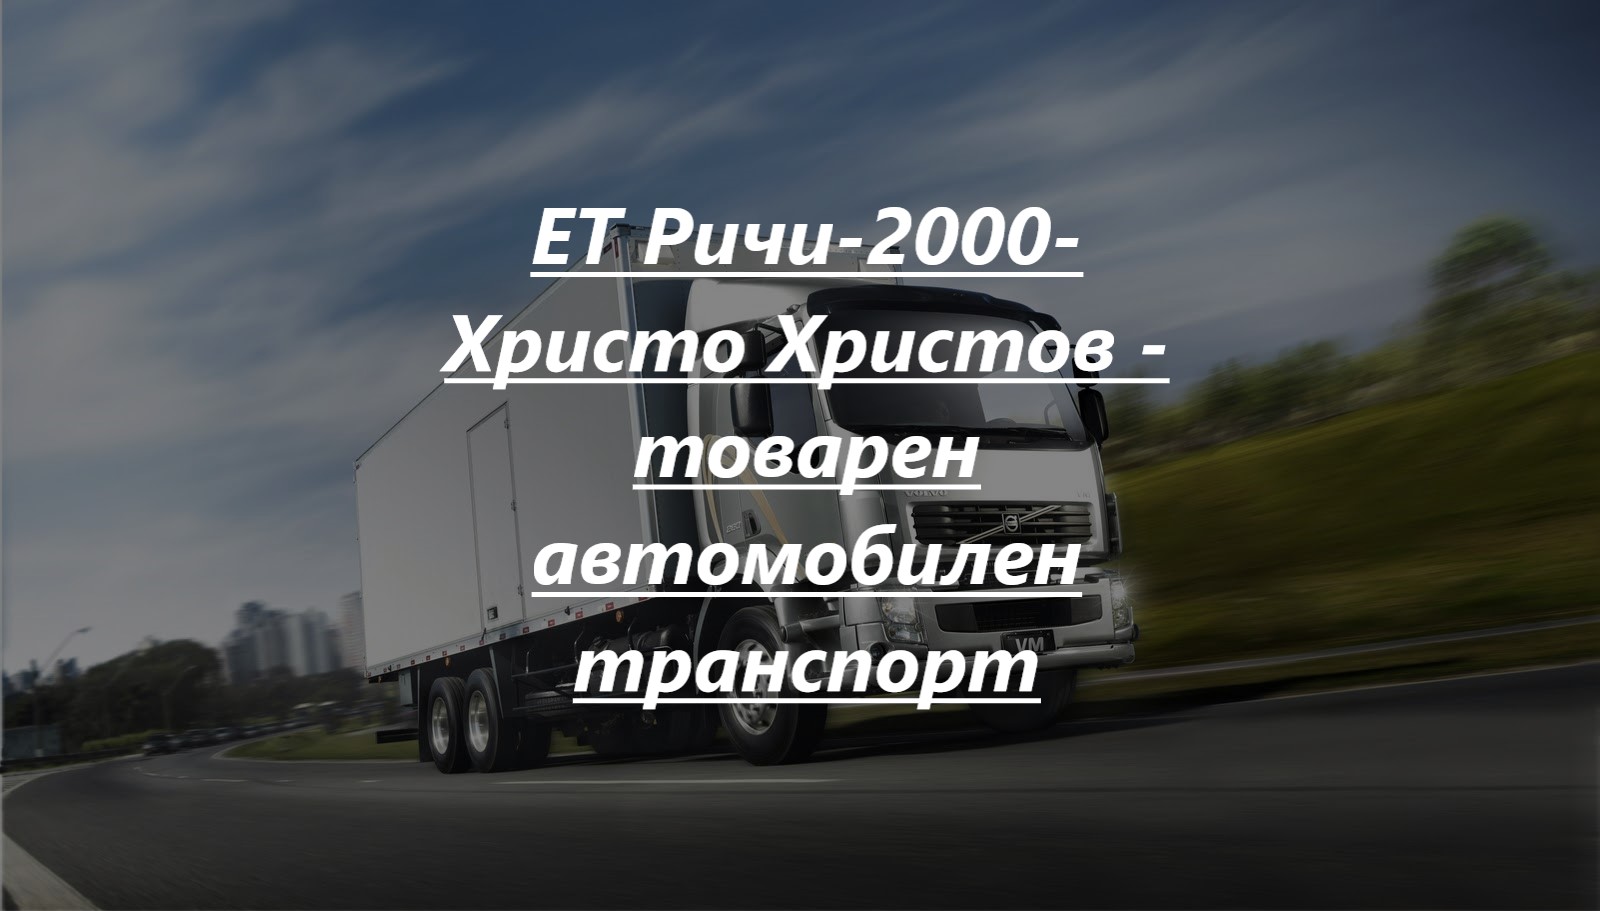 Image for ЕТ "Ричи-2000 - Христо Христов" | Товарен автомобилен транспорт, Маринка